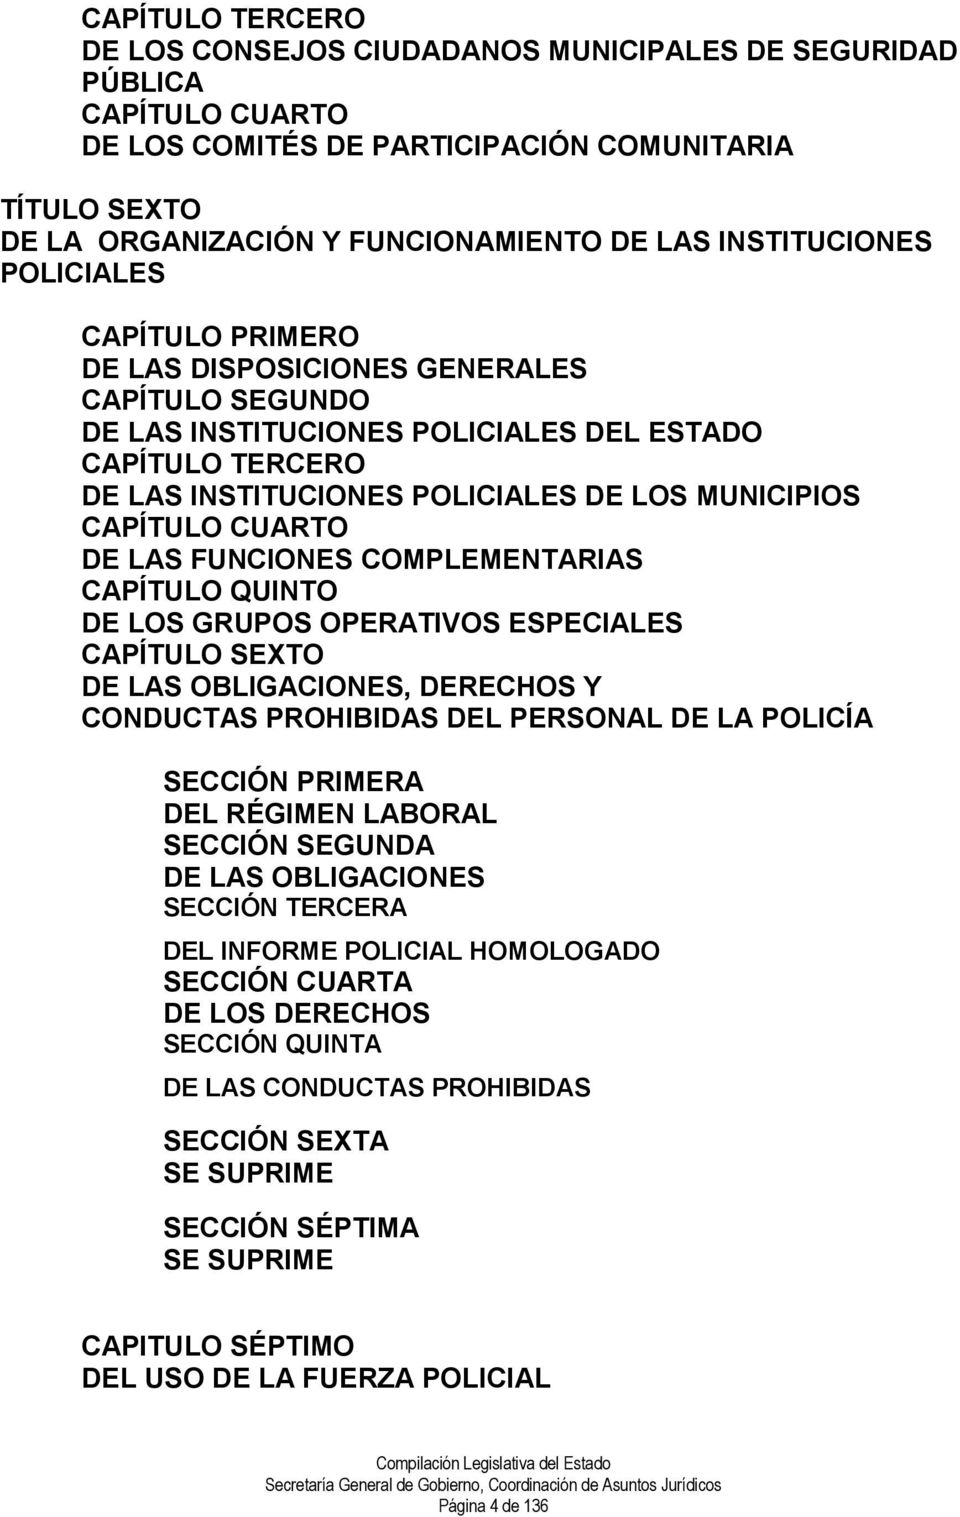 CAPÍTULO CUARTO DE LAS FUNCIONES COMPLEMENTARIAS CAPÍTULO QUINTO DE LOS GRUPOS OPERATIVOS ESPECIALES CAPÍTULO SEXTO DE LAS OBLIGACIONES, DERECHOS Y CONDUCTAS PROHIBIDAS DEL PERSONAL DE LA POLICÍA